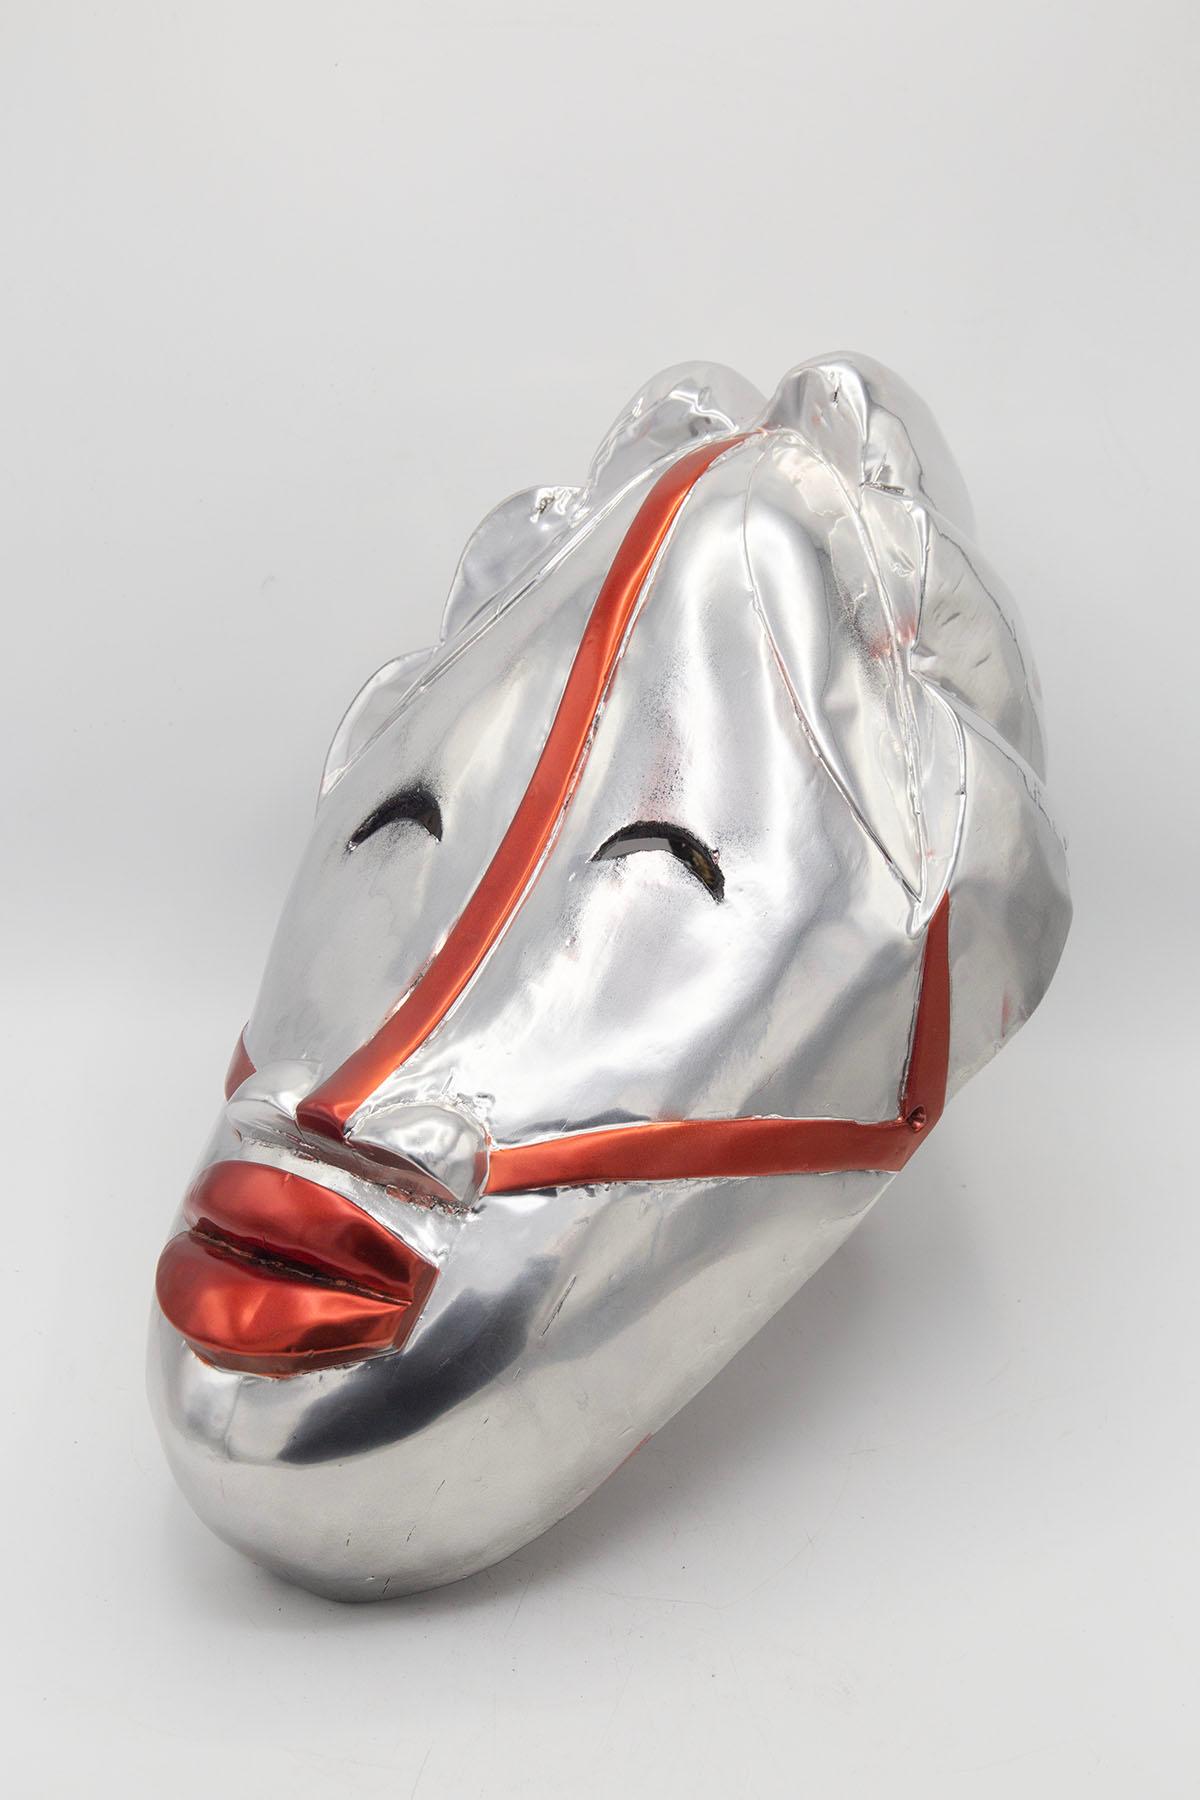 Exzentrische afrikanische Maske und Einzelstück des Künstlers Bomber Bax. Seltenes und einzigartiges Werk des Künstlers. Die Maske stammt aus den frühen 1900er Jahren und wurde Ende 2022 von dem Künstler bearbeitet und bemalt.
Der Künstler